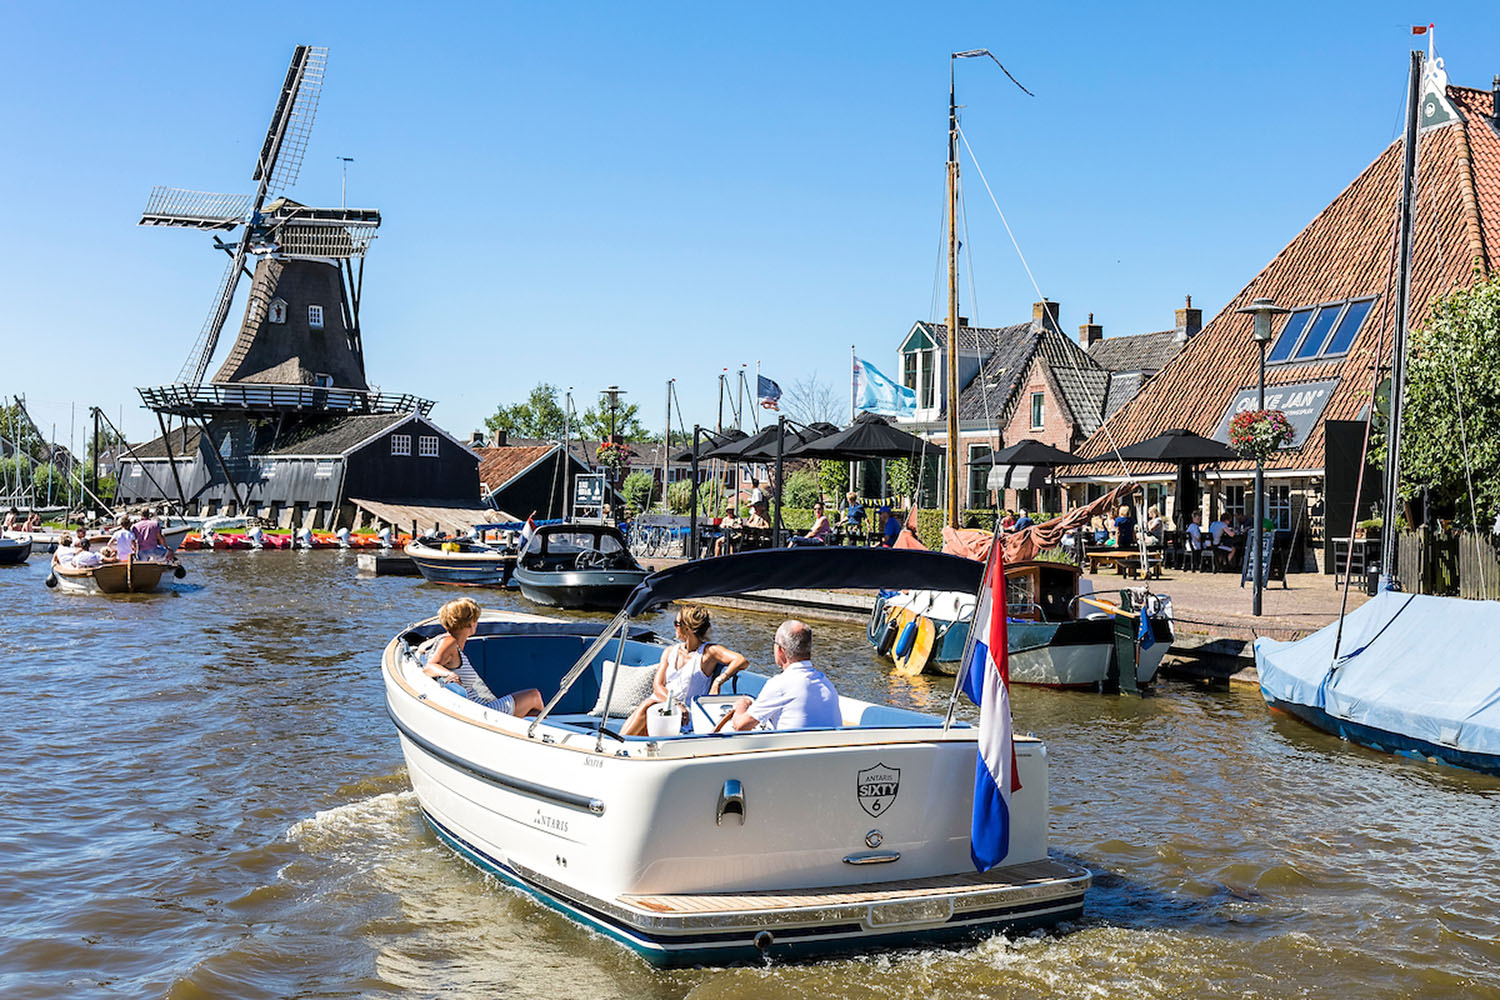 Antaris  Sixty6 Te koop bij Bomert watersport Giethoorn